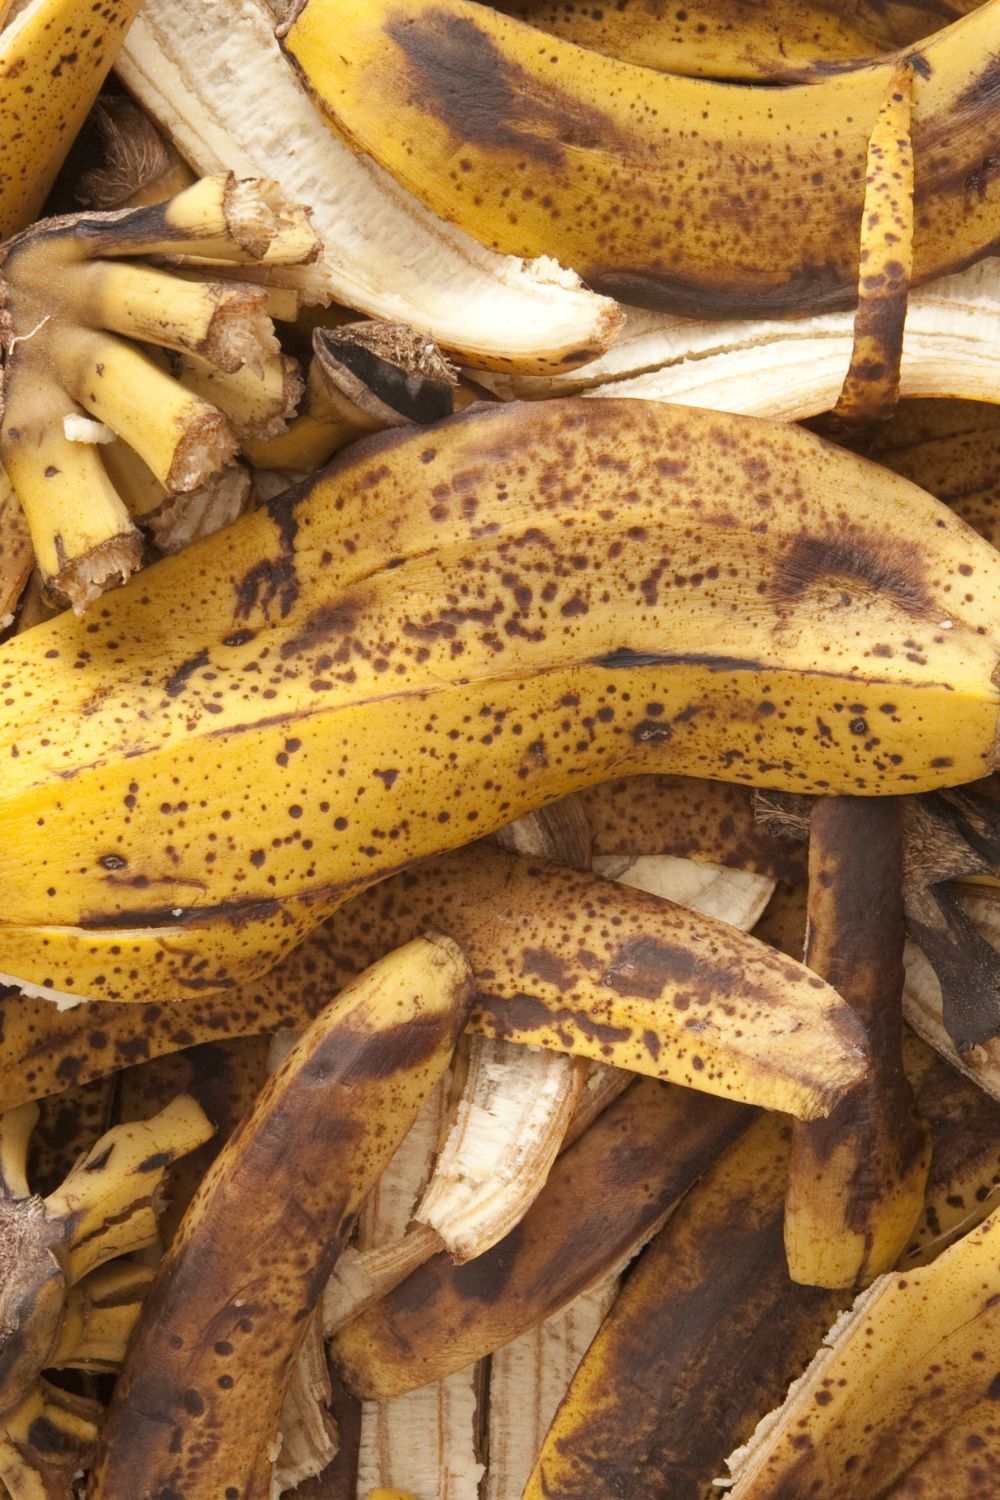 Banana Peel Recipes